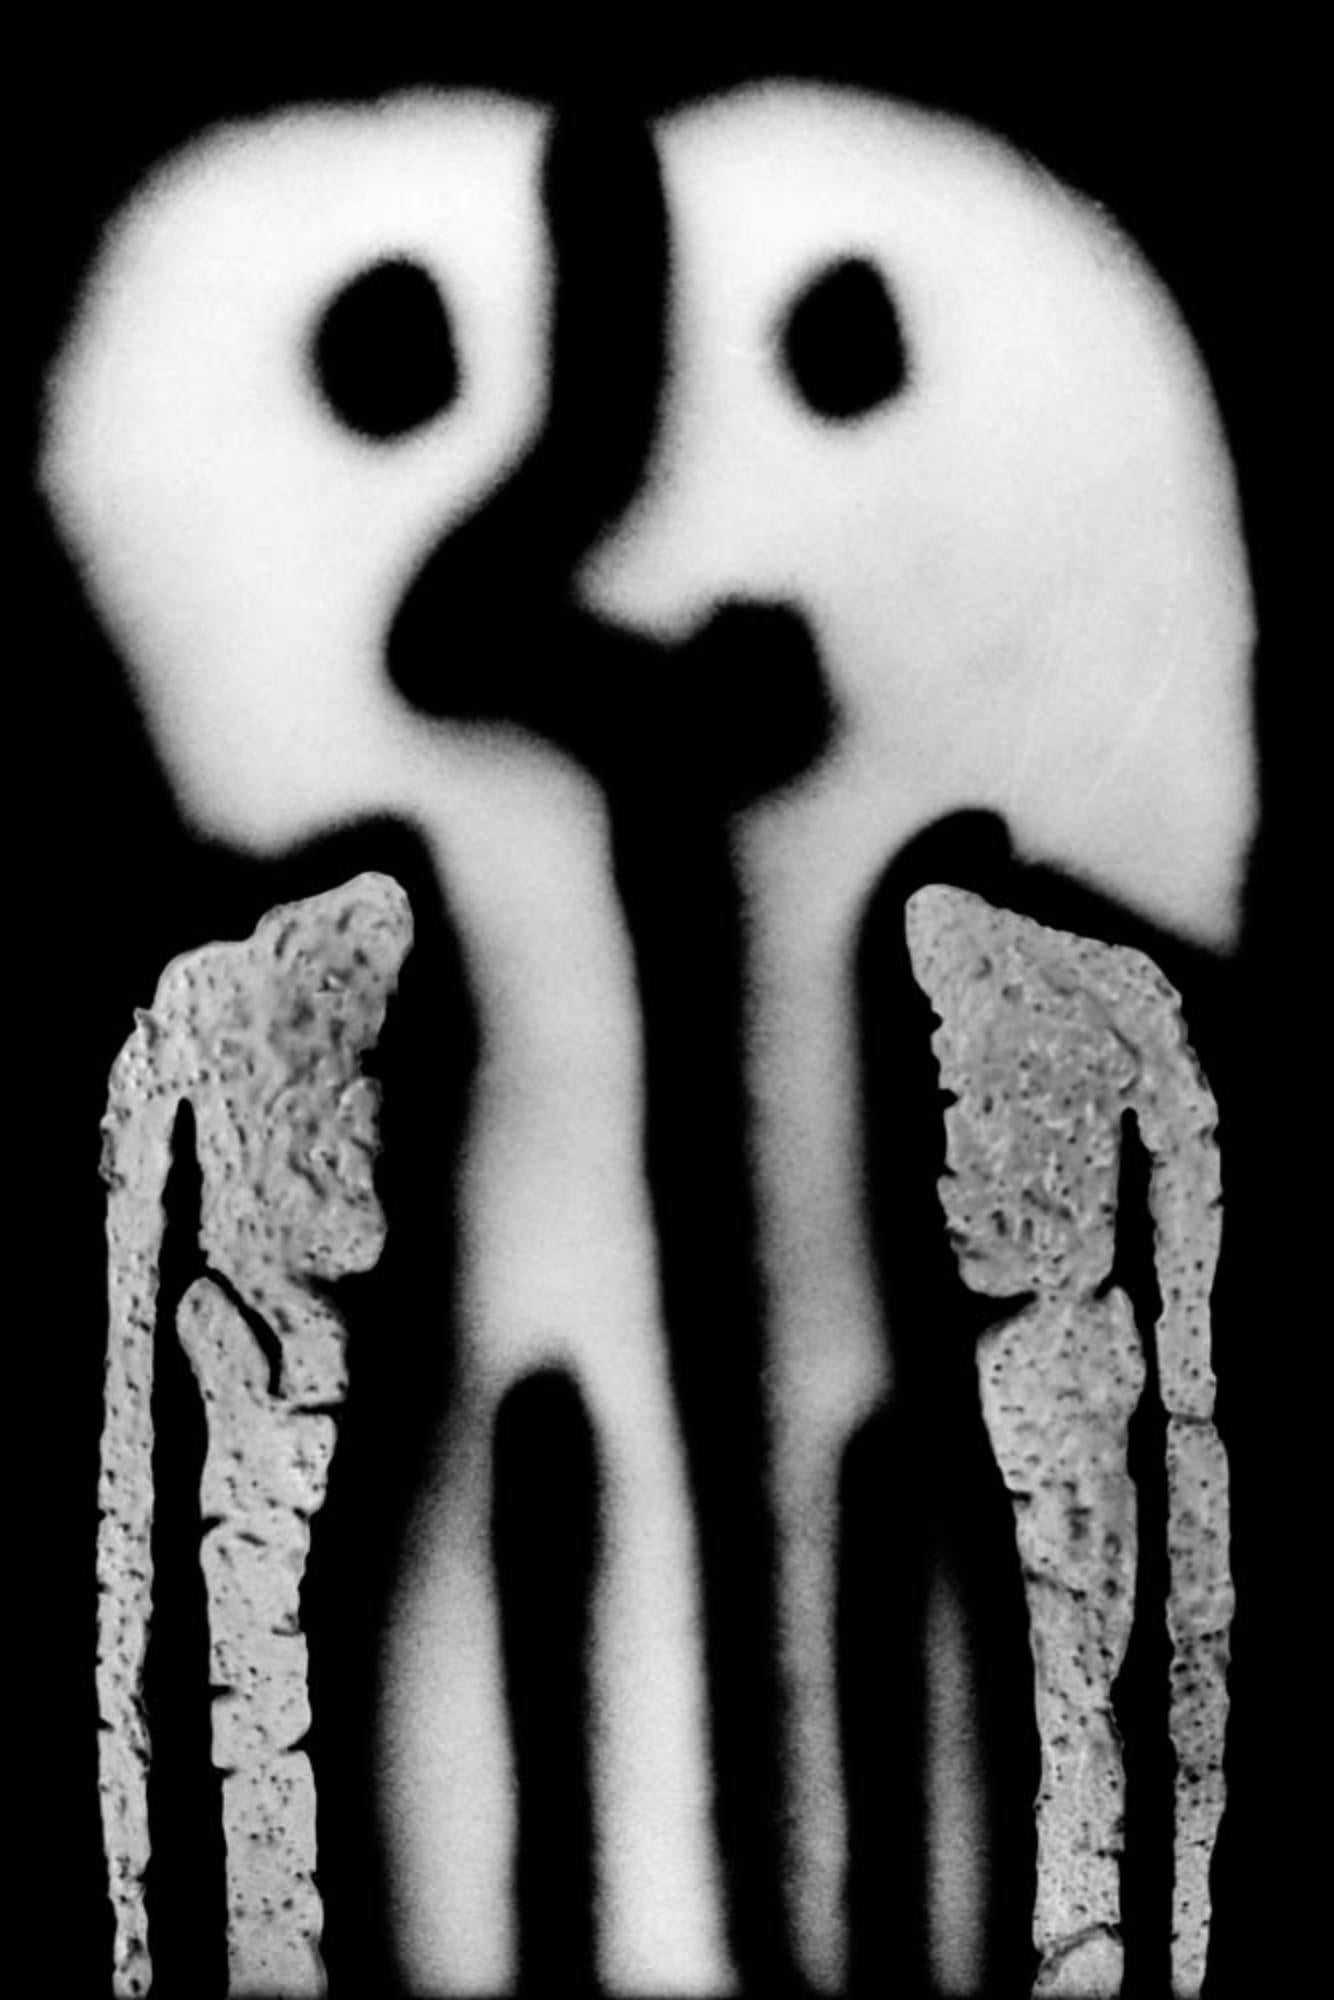 Roger Ballen
Duality, de la série "The Theatre of Apparitions", 2013
Caisson lumineux Texflex simple face, revêtement époxy noir ferro
Caisson lumineux 100 x 86 x 9 cm (39 3/8 x 33 7/8 x 3 1/2 in.)
Édition de 3 (#1/3)

Tous les caissons lumineux